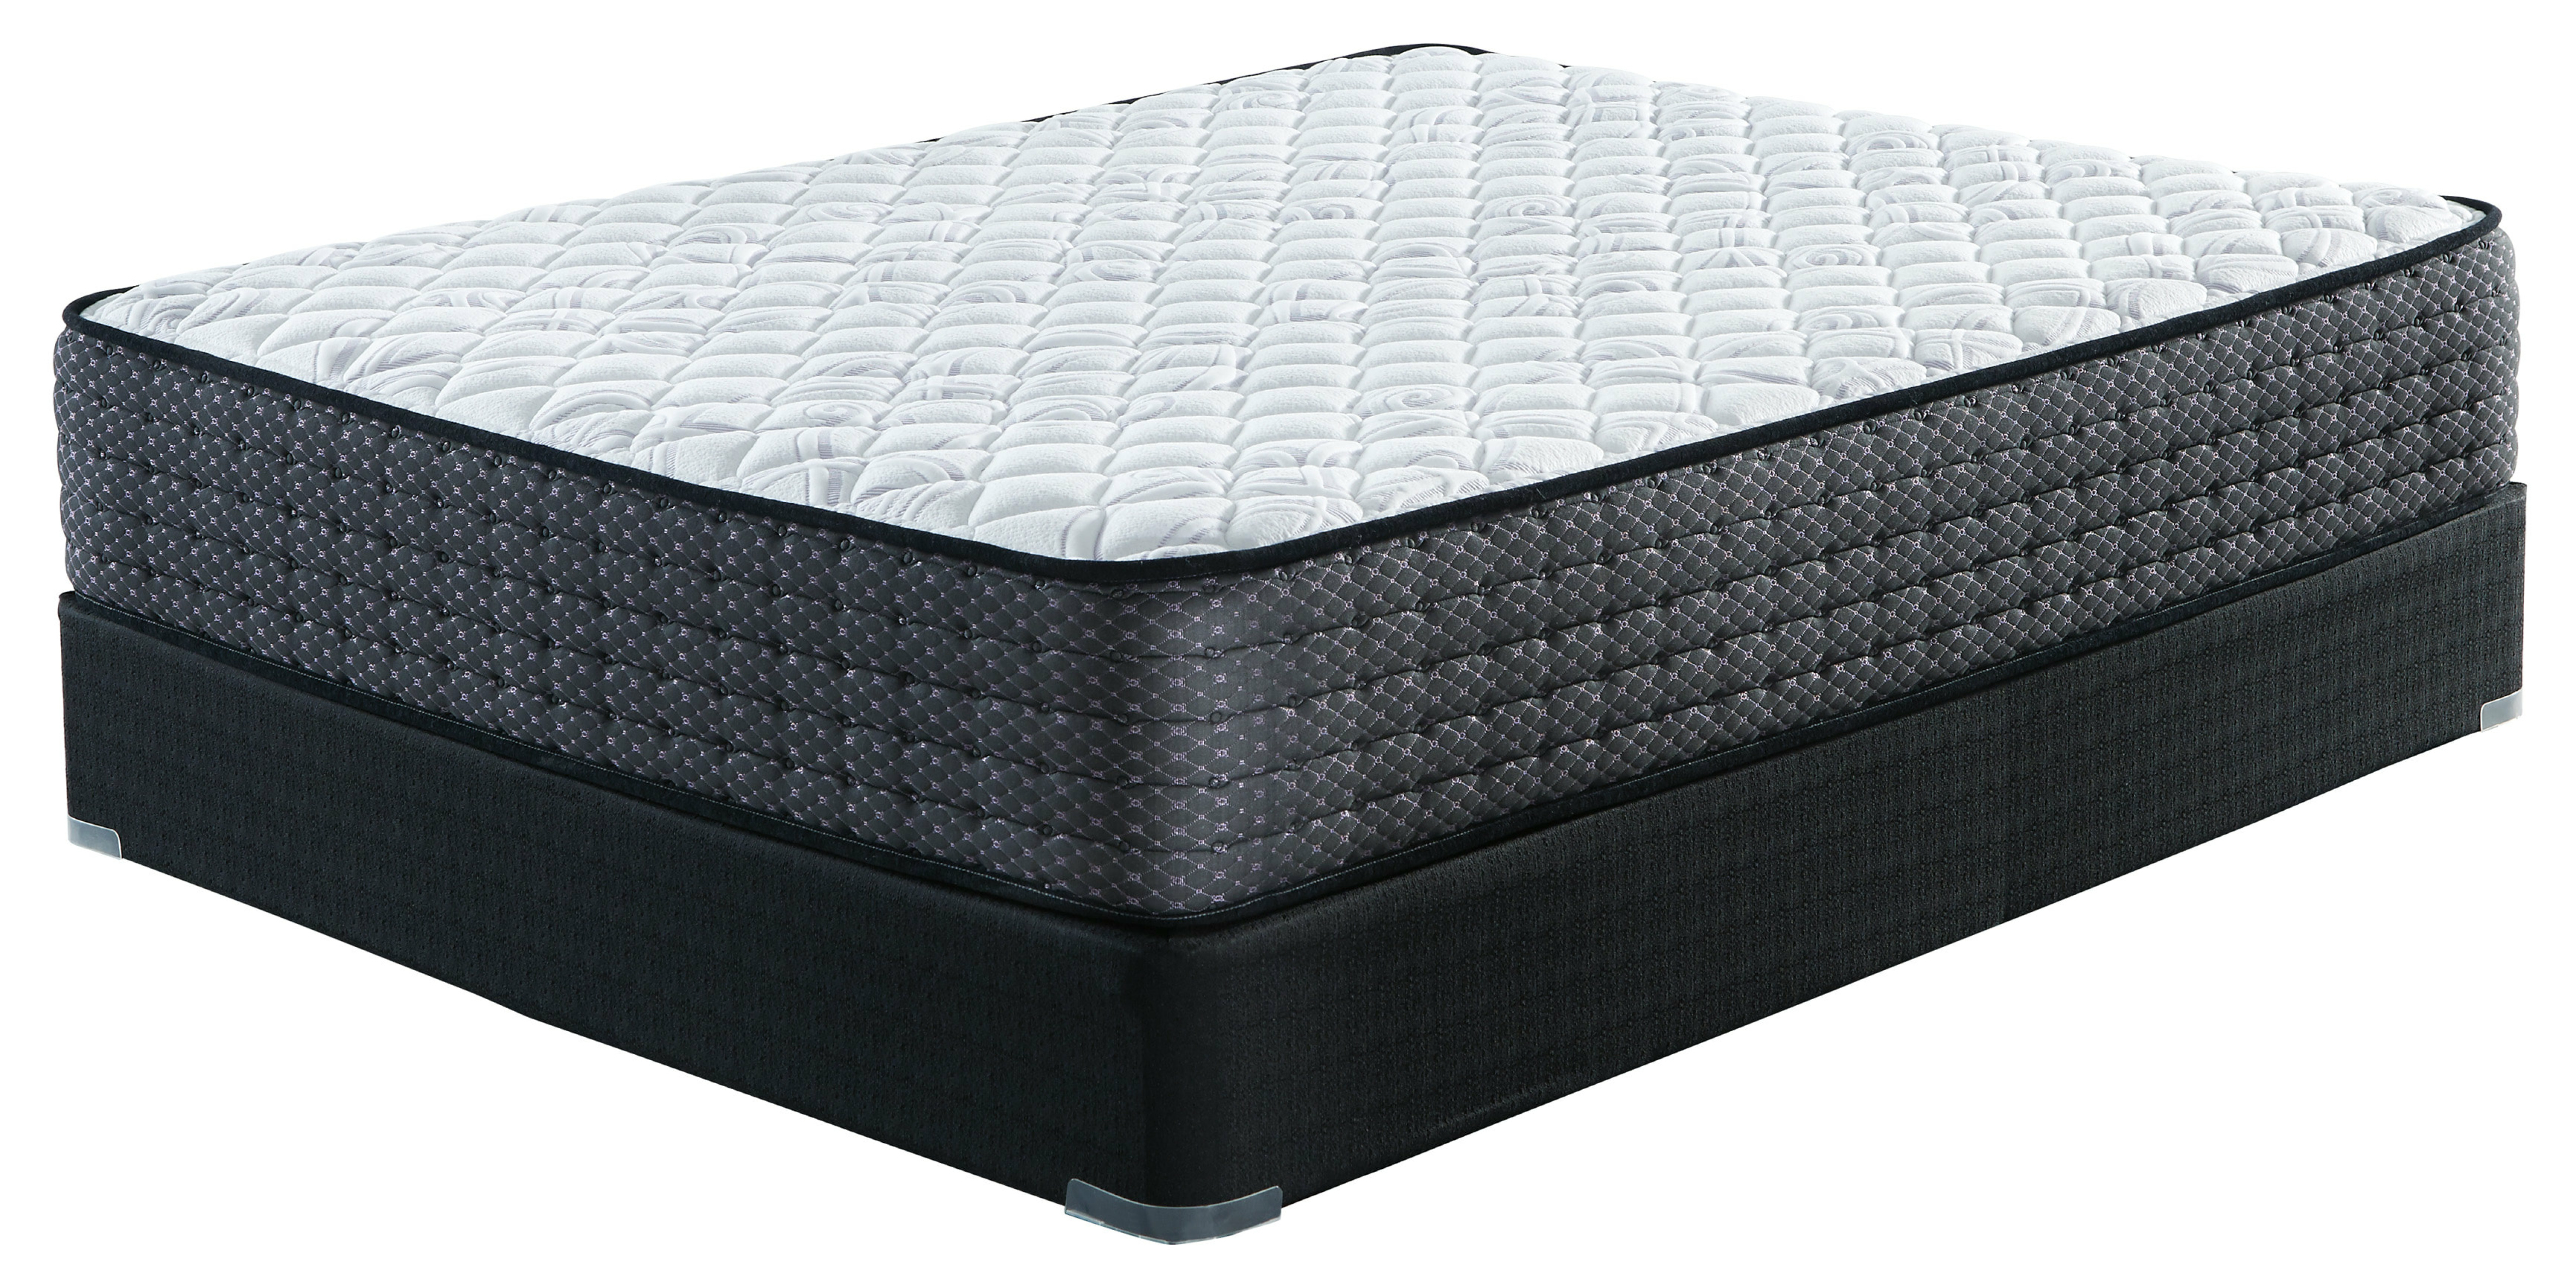 sierra sleep mattress by ashley